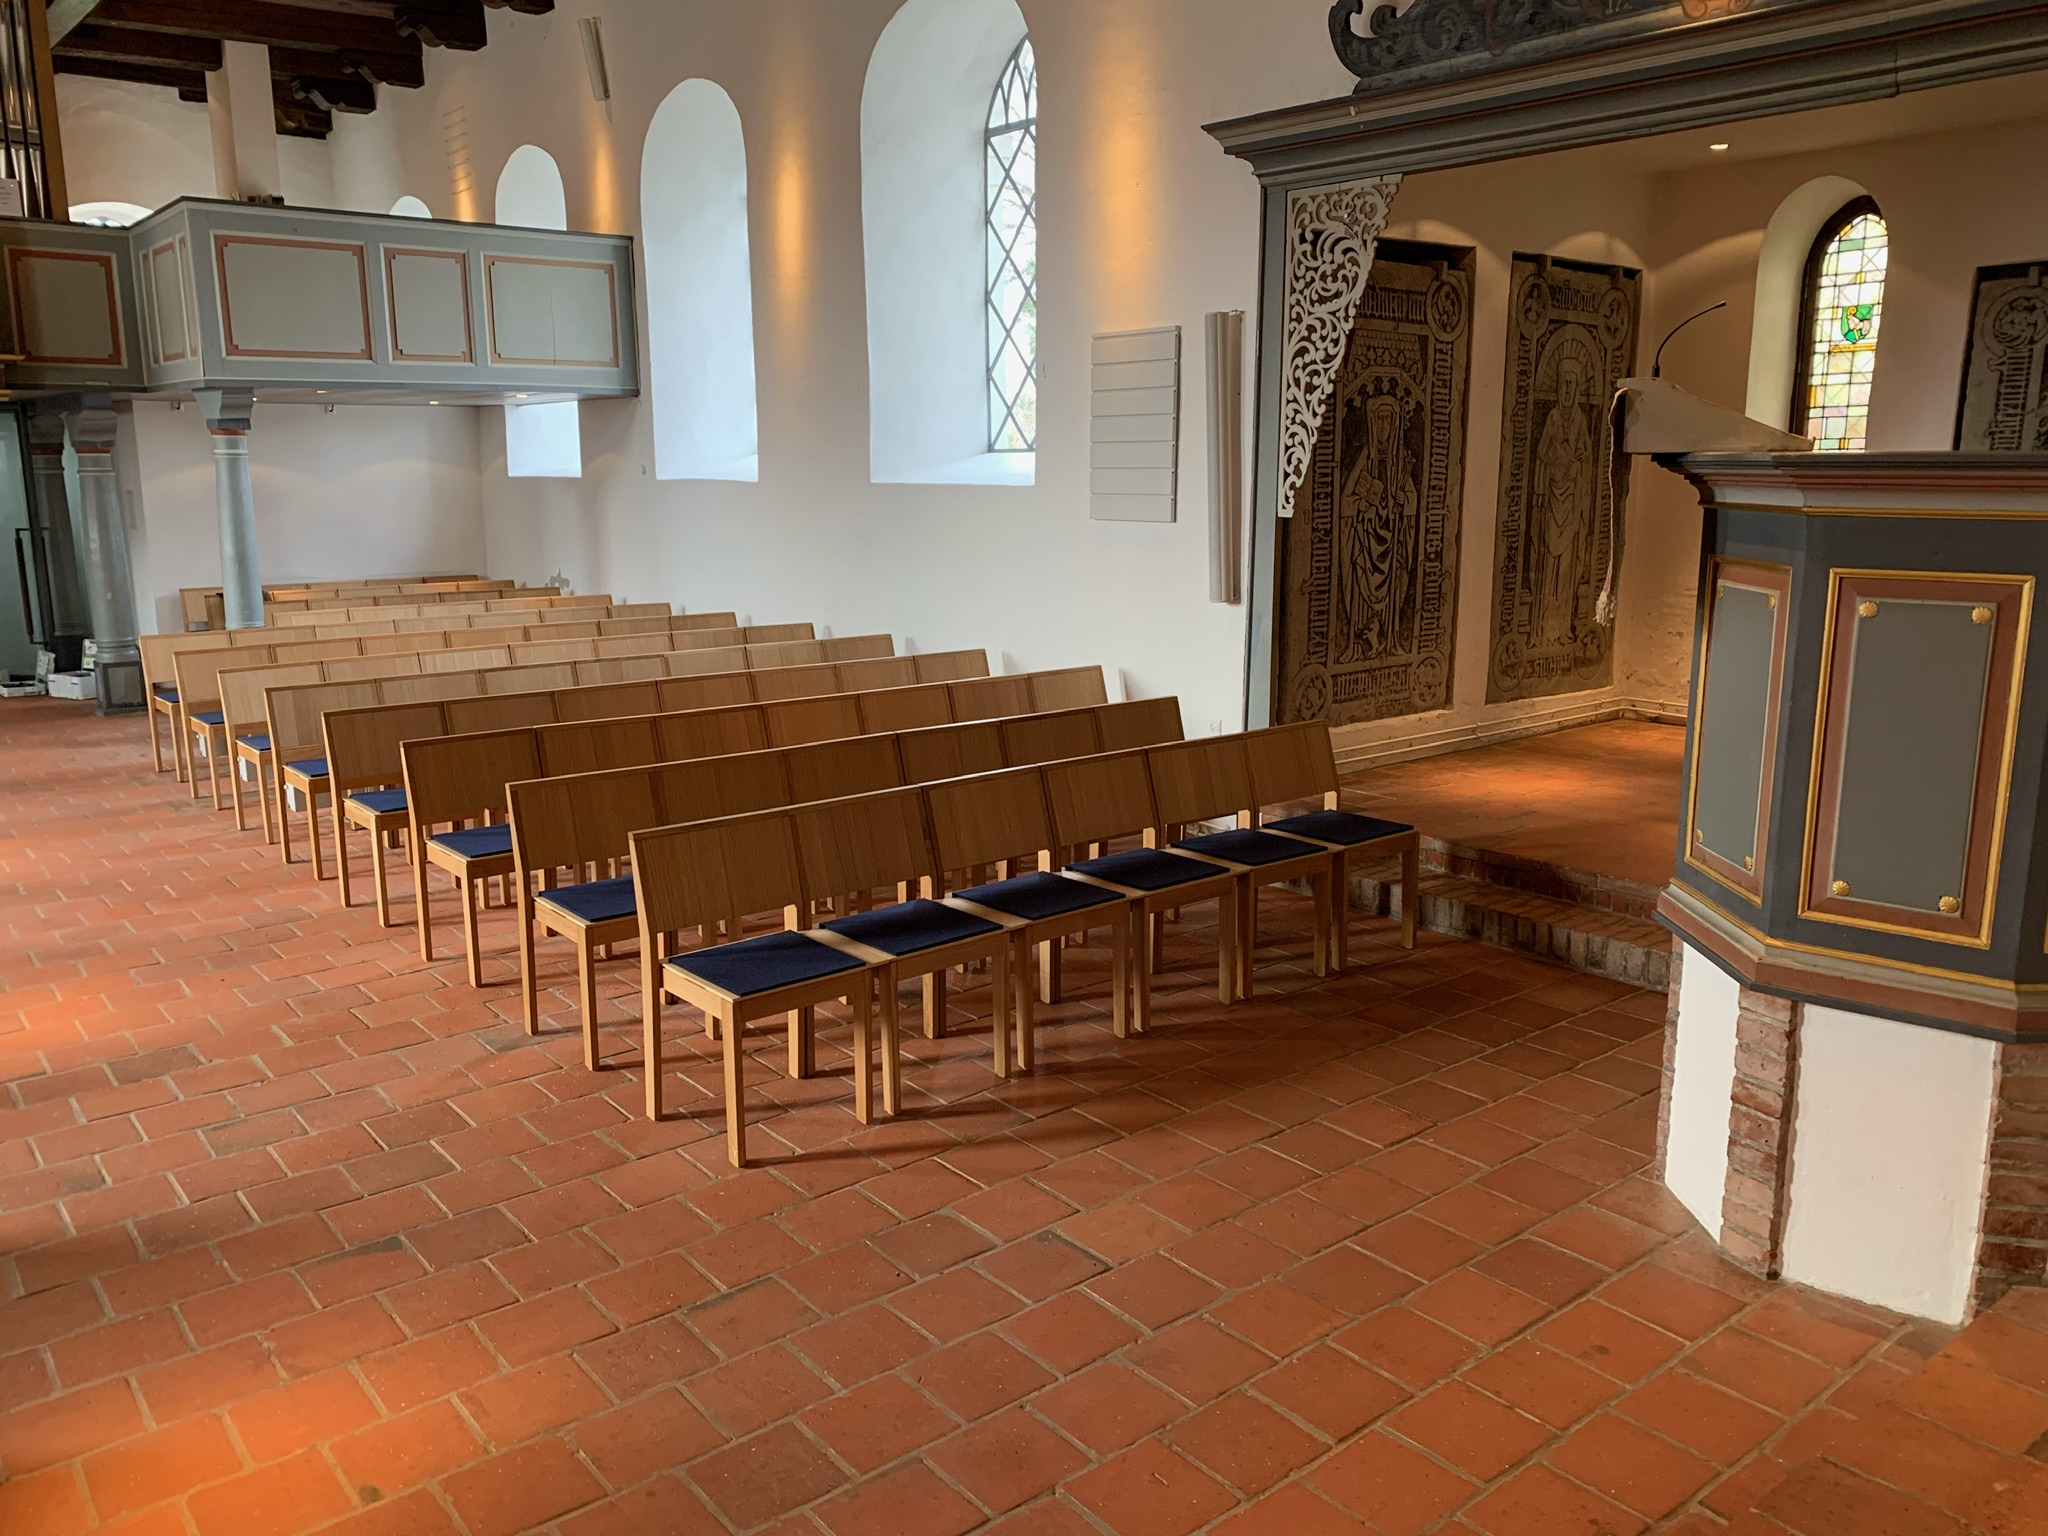 Grönemeyer Kirchenstühle | Hanna in der Matthias-Claudius-Kirche Reinfeld